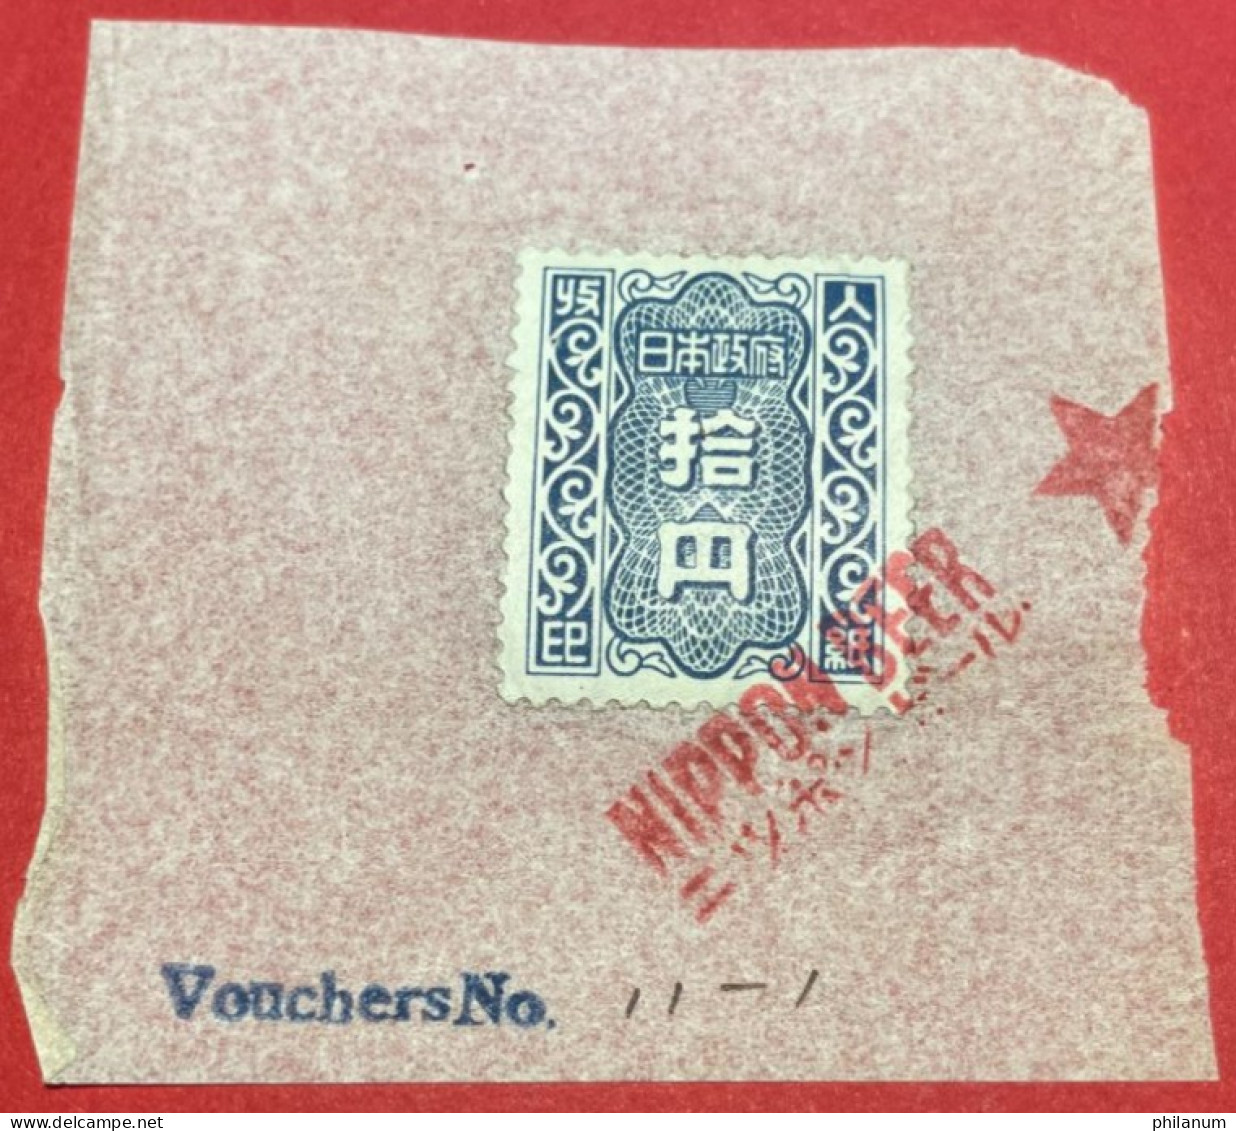 GIAPPONE 1946-1957 - #1 - MARCA DA BOLLO 100 YEN - SHOWAGIAPPONE 1946-1957 - #1 - MARCA DA BOLLO 100 YEN - SHOWA - Cartas & Documentos